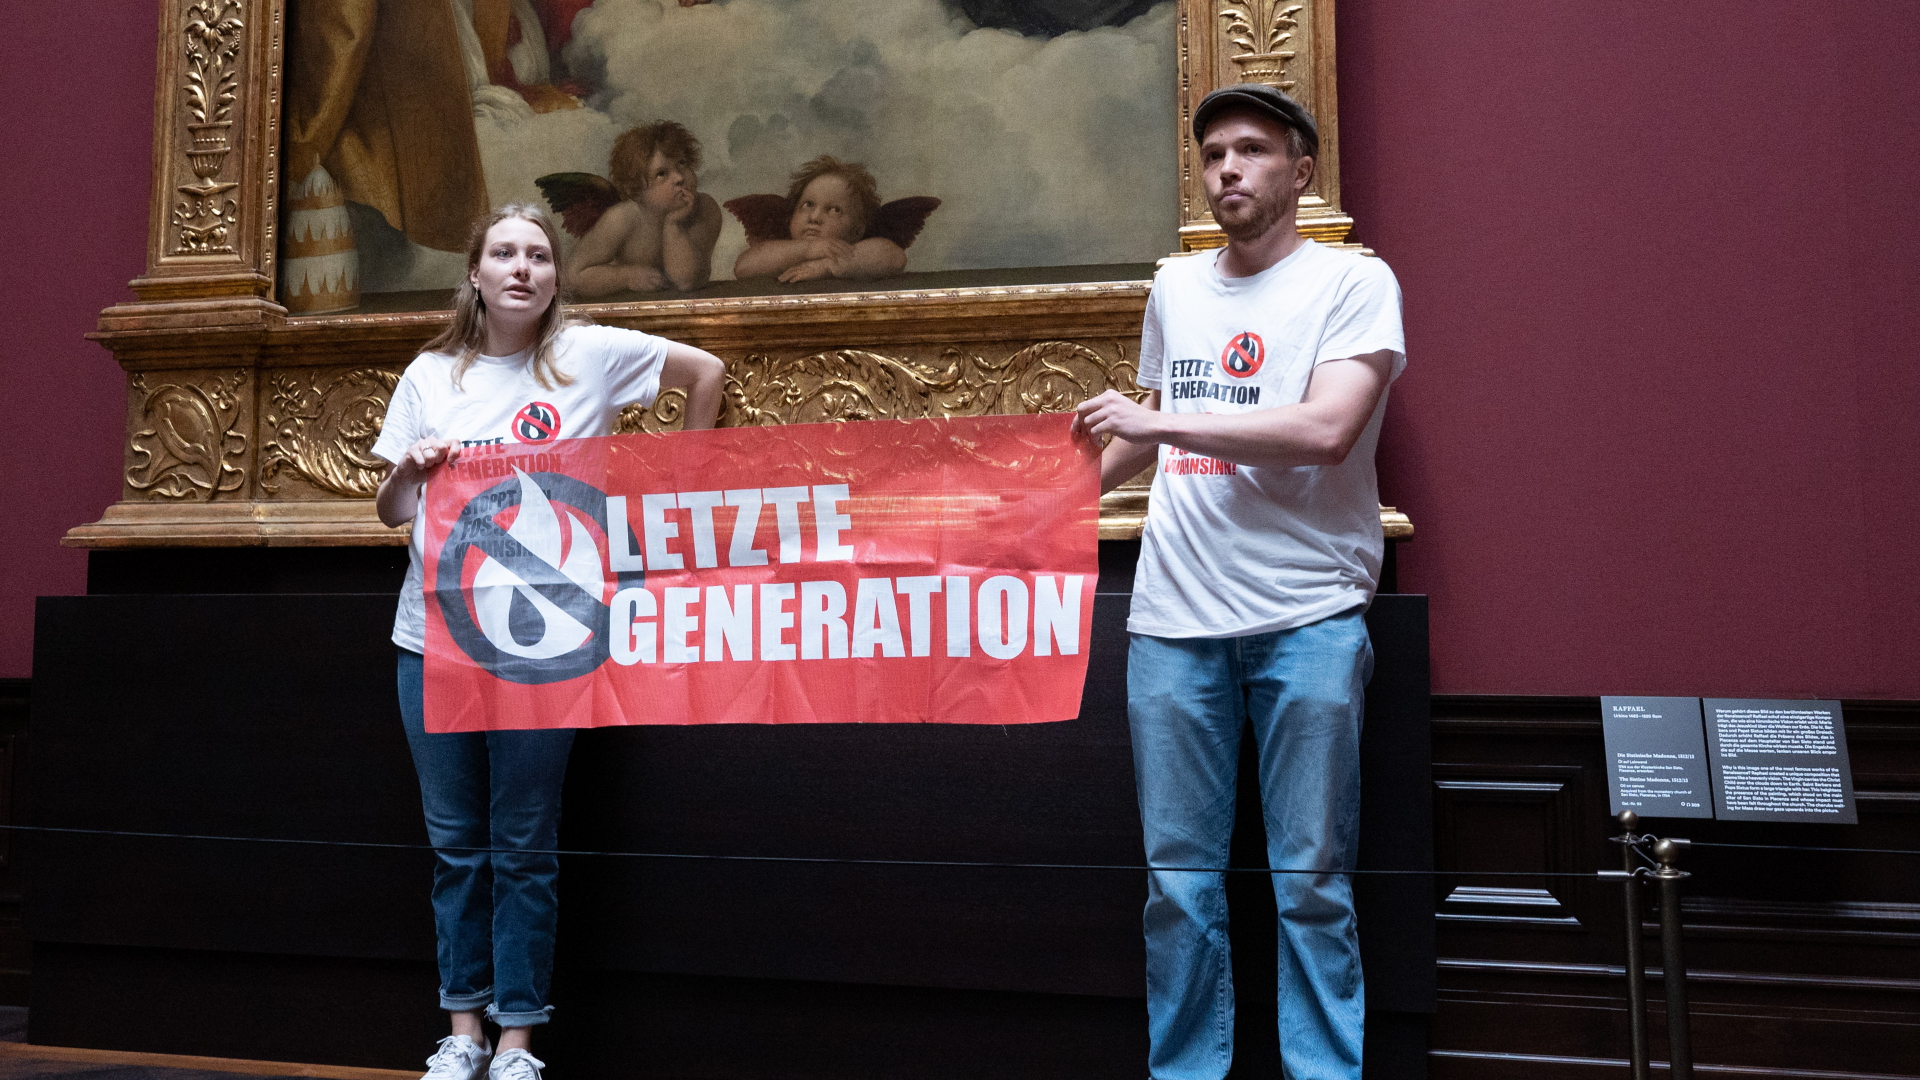 Zwei Umweltaktivisten der Gruppe "Letzte Generation" stehen mit einem Banner in der Gemäldegalerie Alte Meister an dem Gemälde ·Sixtinische Madonna· von Raffael. | dpa